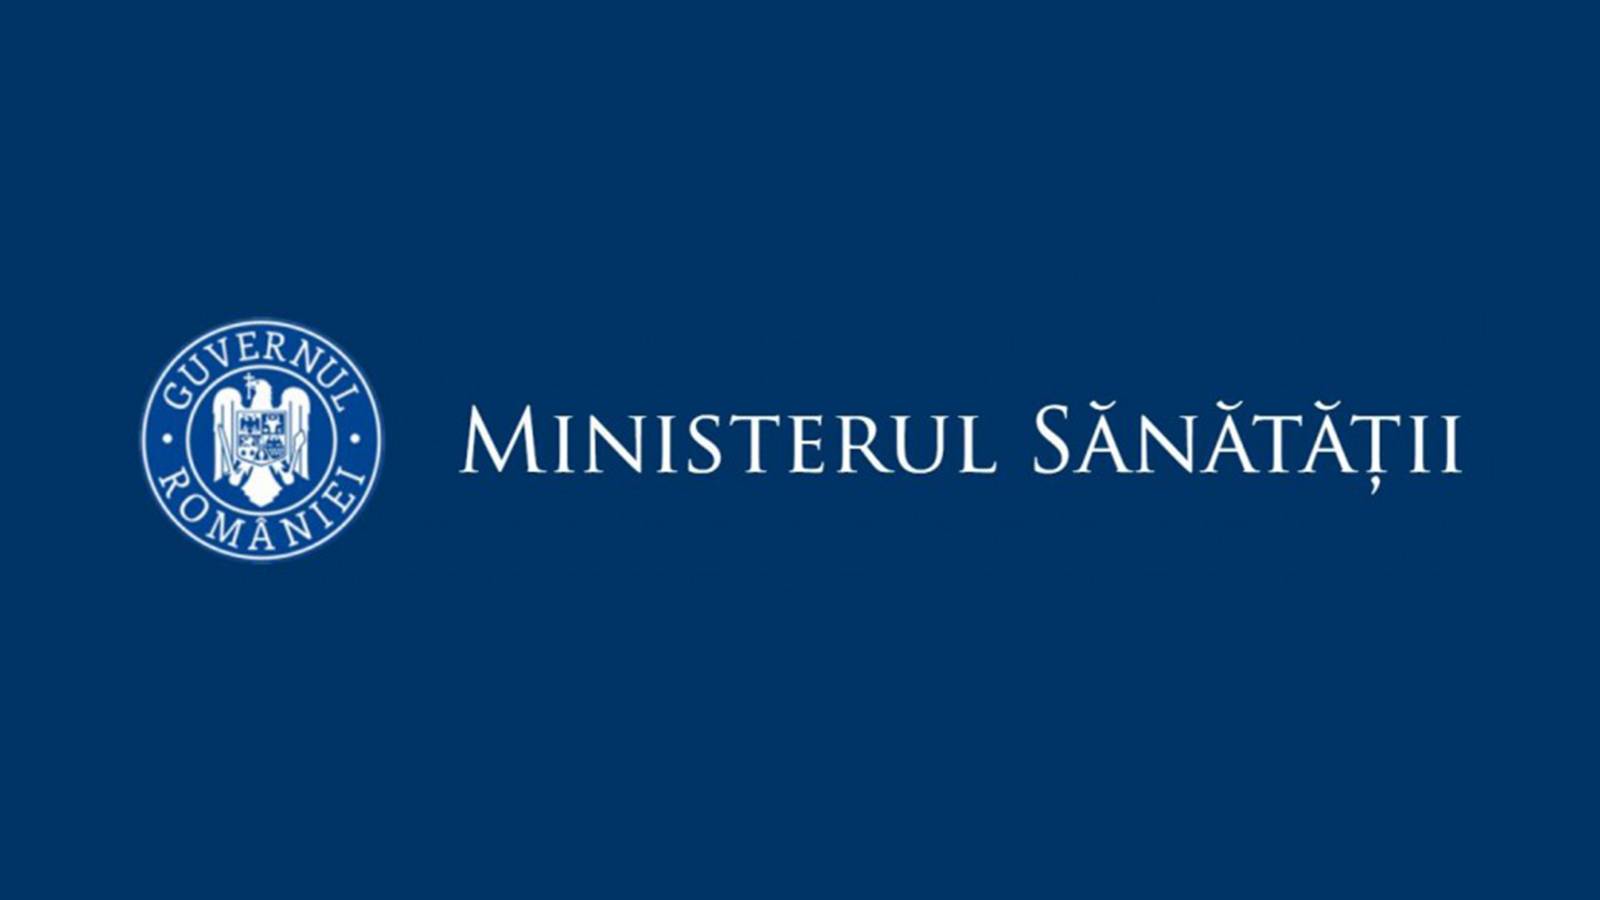 Sundhedsministeriets incidensrater i Rumænien den 18. maj